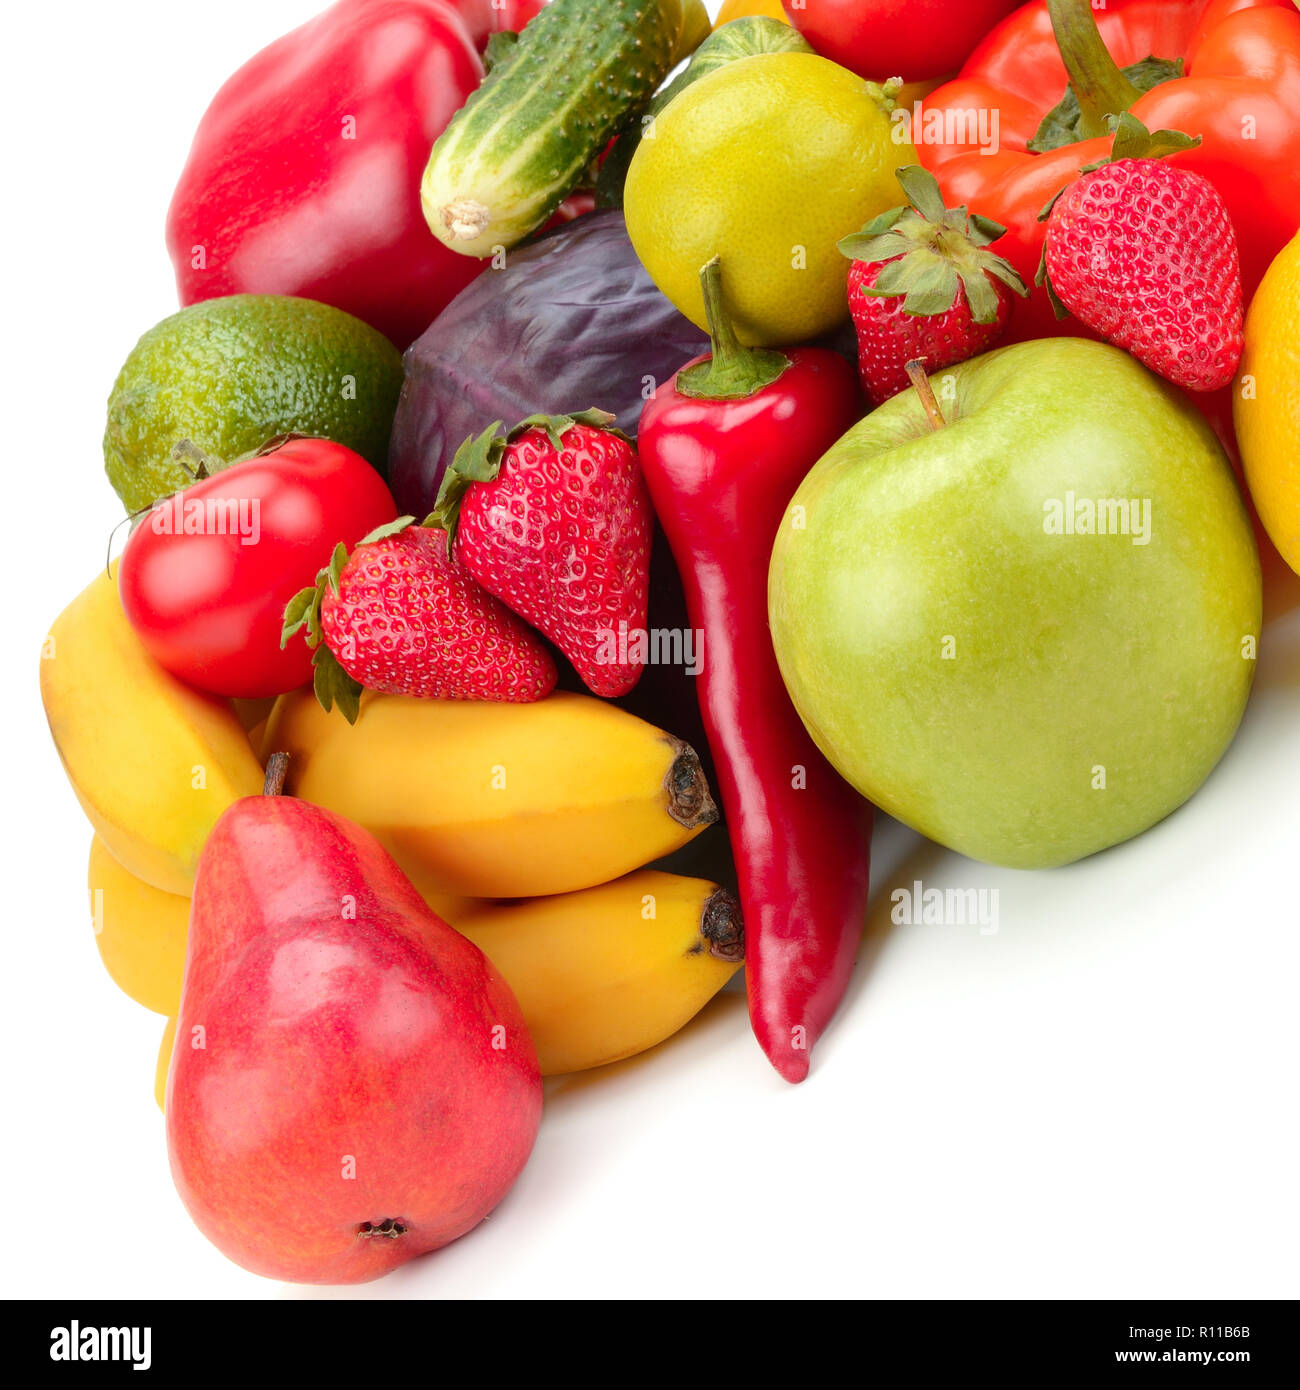 Fruits et légumes frais isolé sur fond blanc Banque D'Images